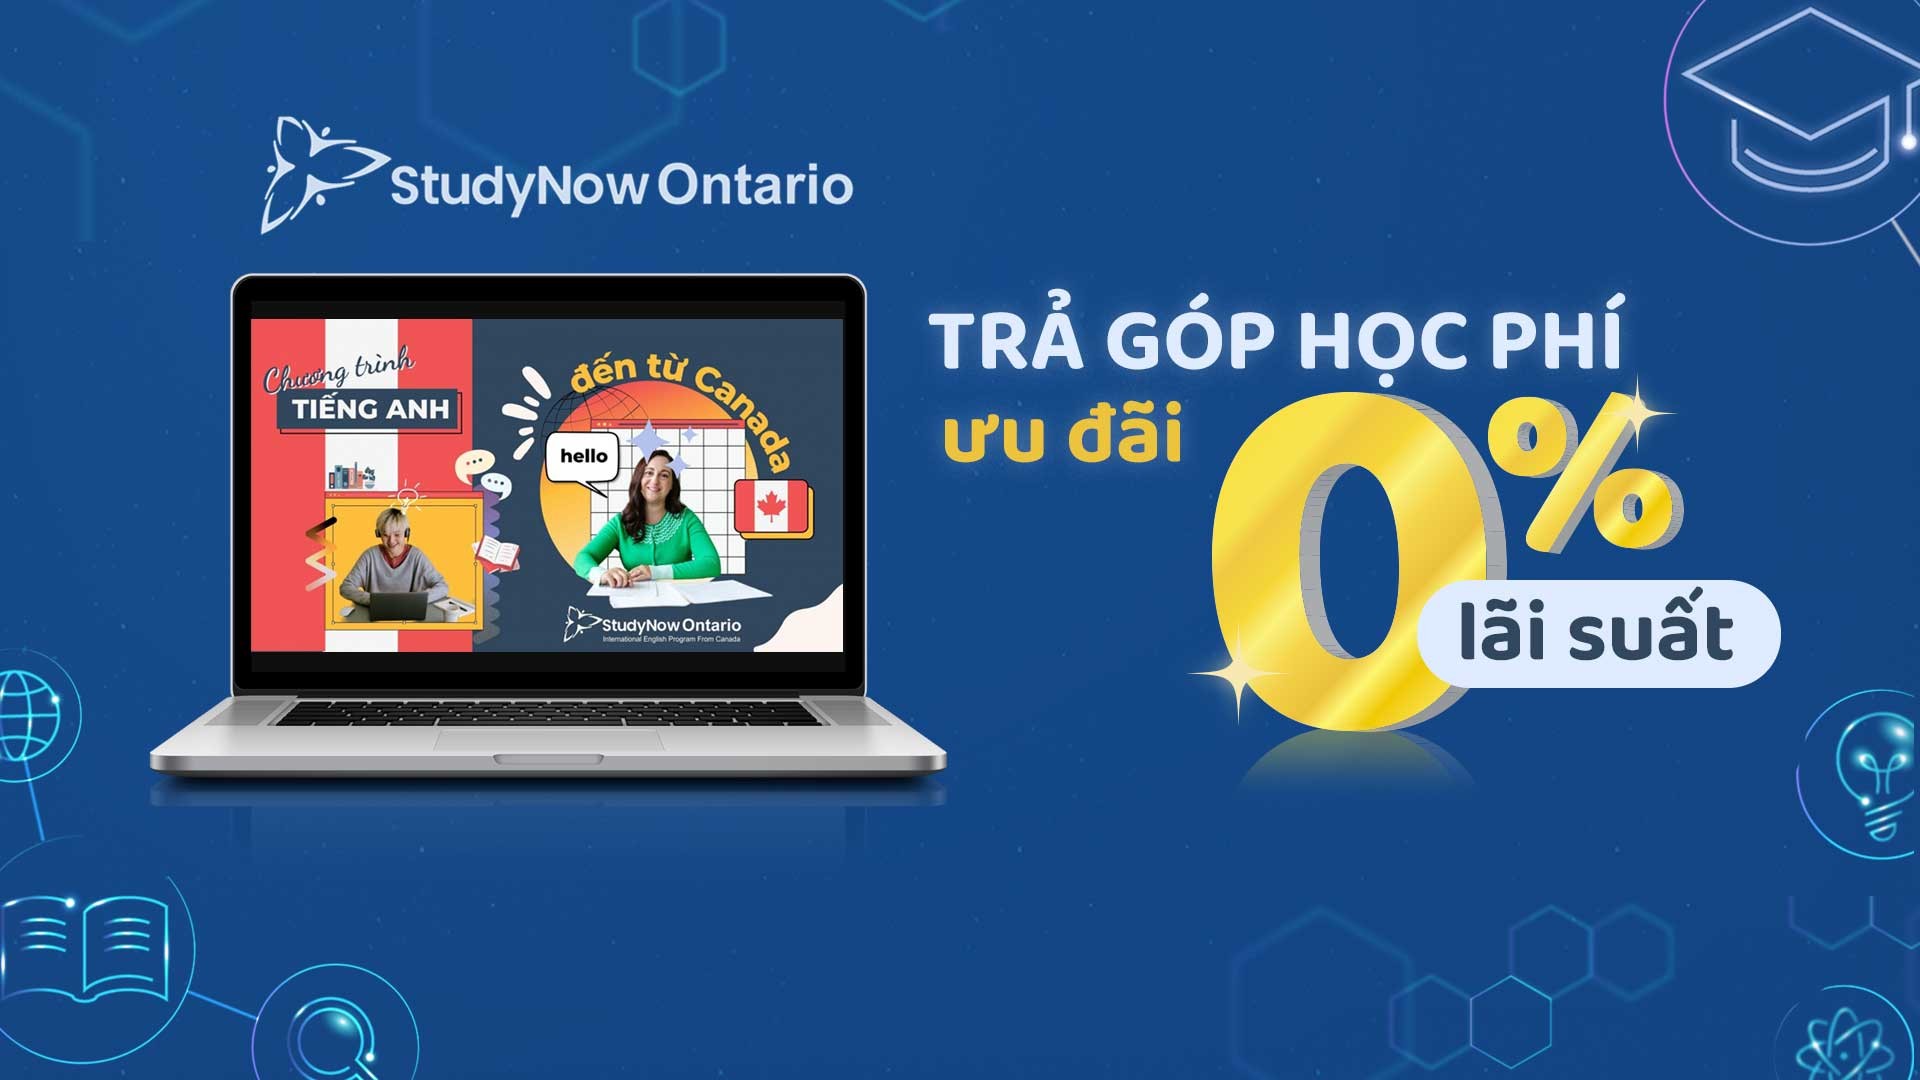 Giỏi tiếng Anh với chương trình trả góp 0% lãi suất chỉ có tại StudyNow Ontario